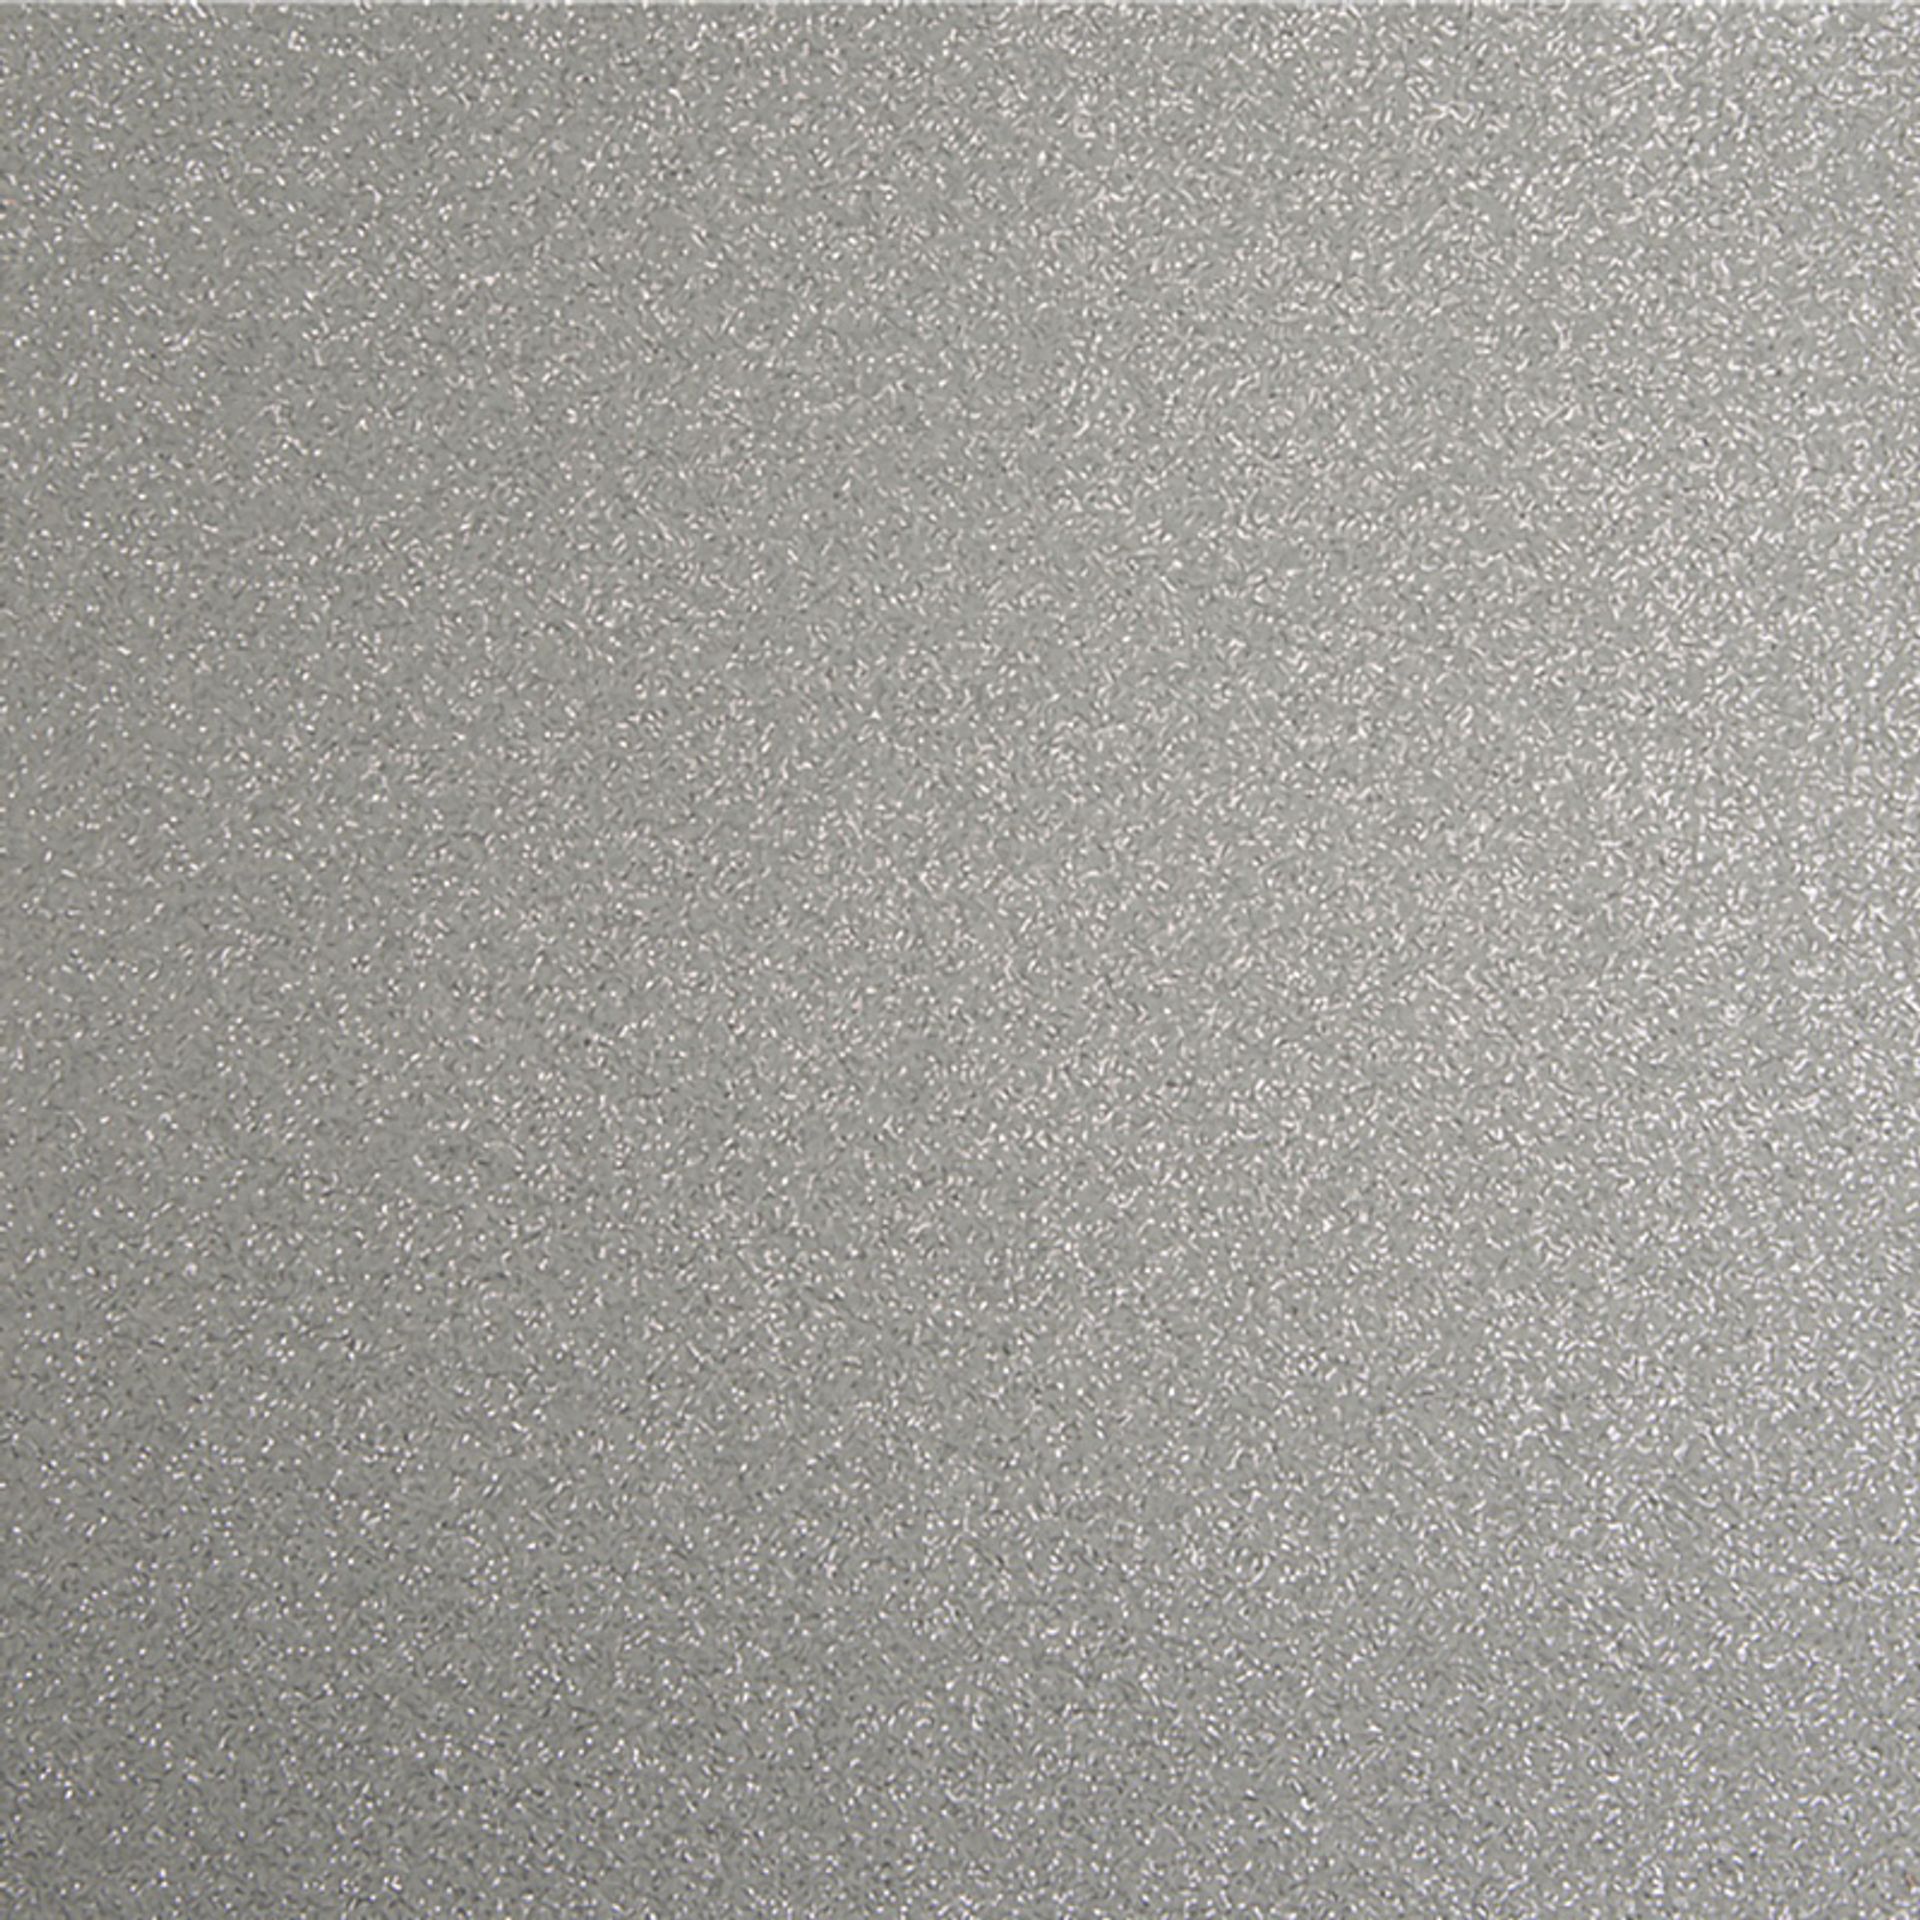 Messeboden Flacher-Nadelvlies-mit-Pailetten EXPOGLITTER Silver 0915 ohne Schutzfolie - Rollenbreite 200 cm